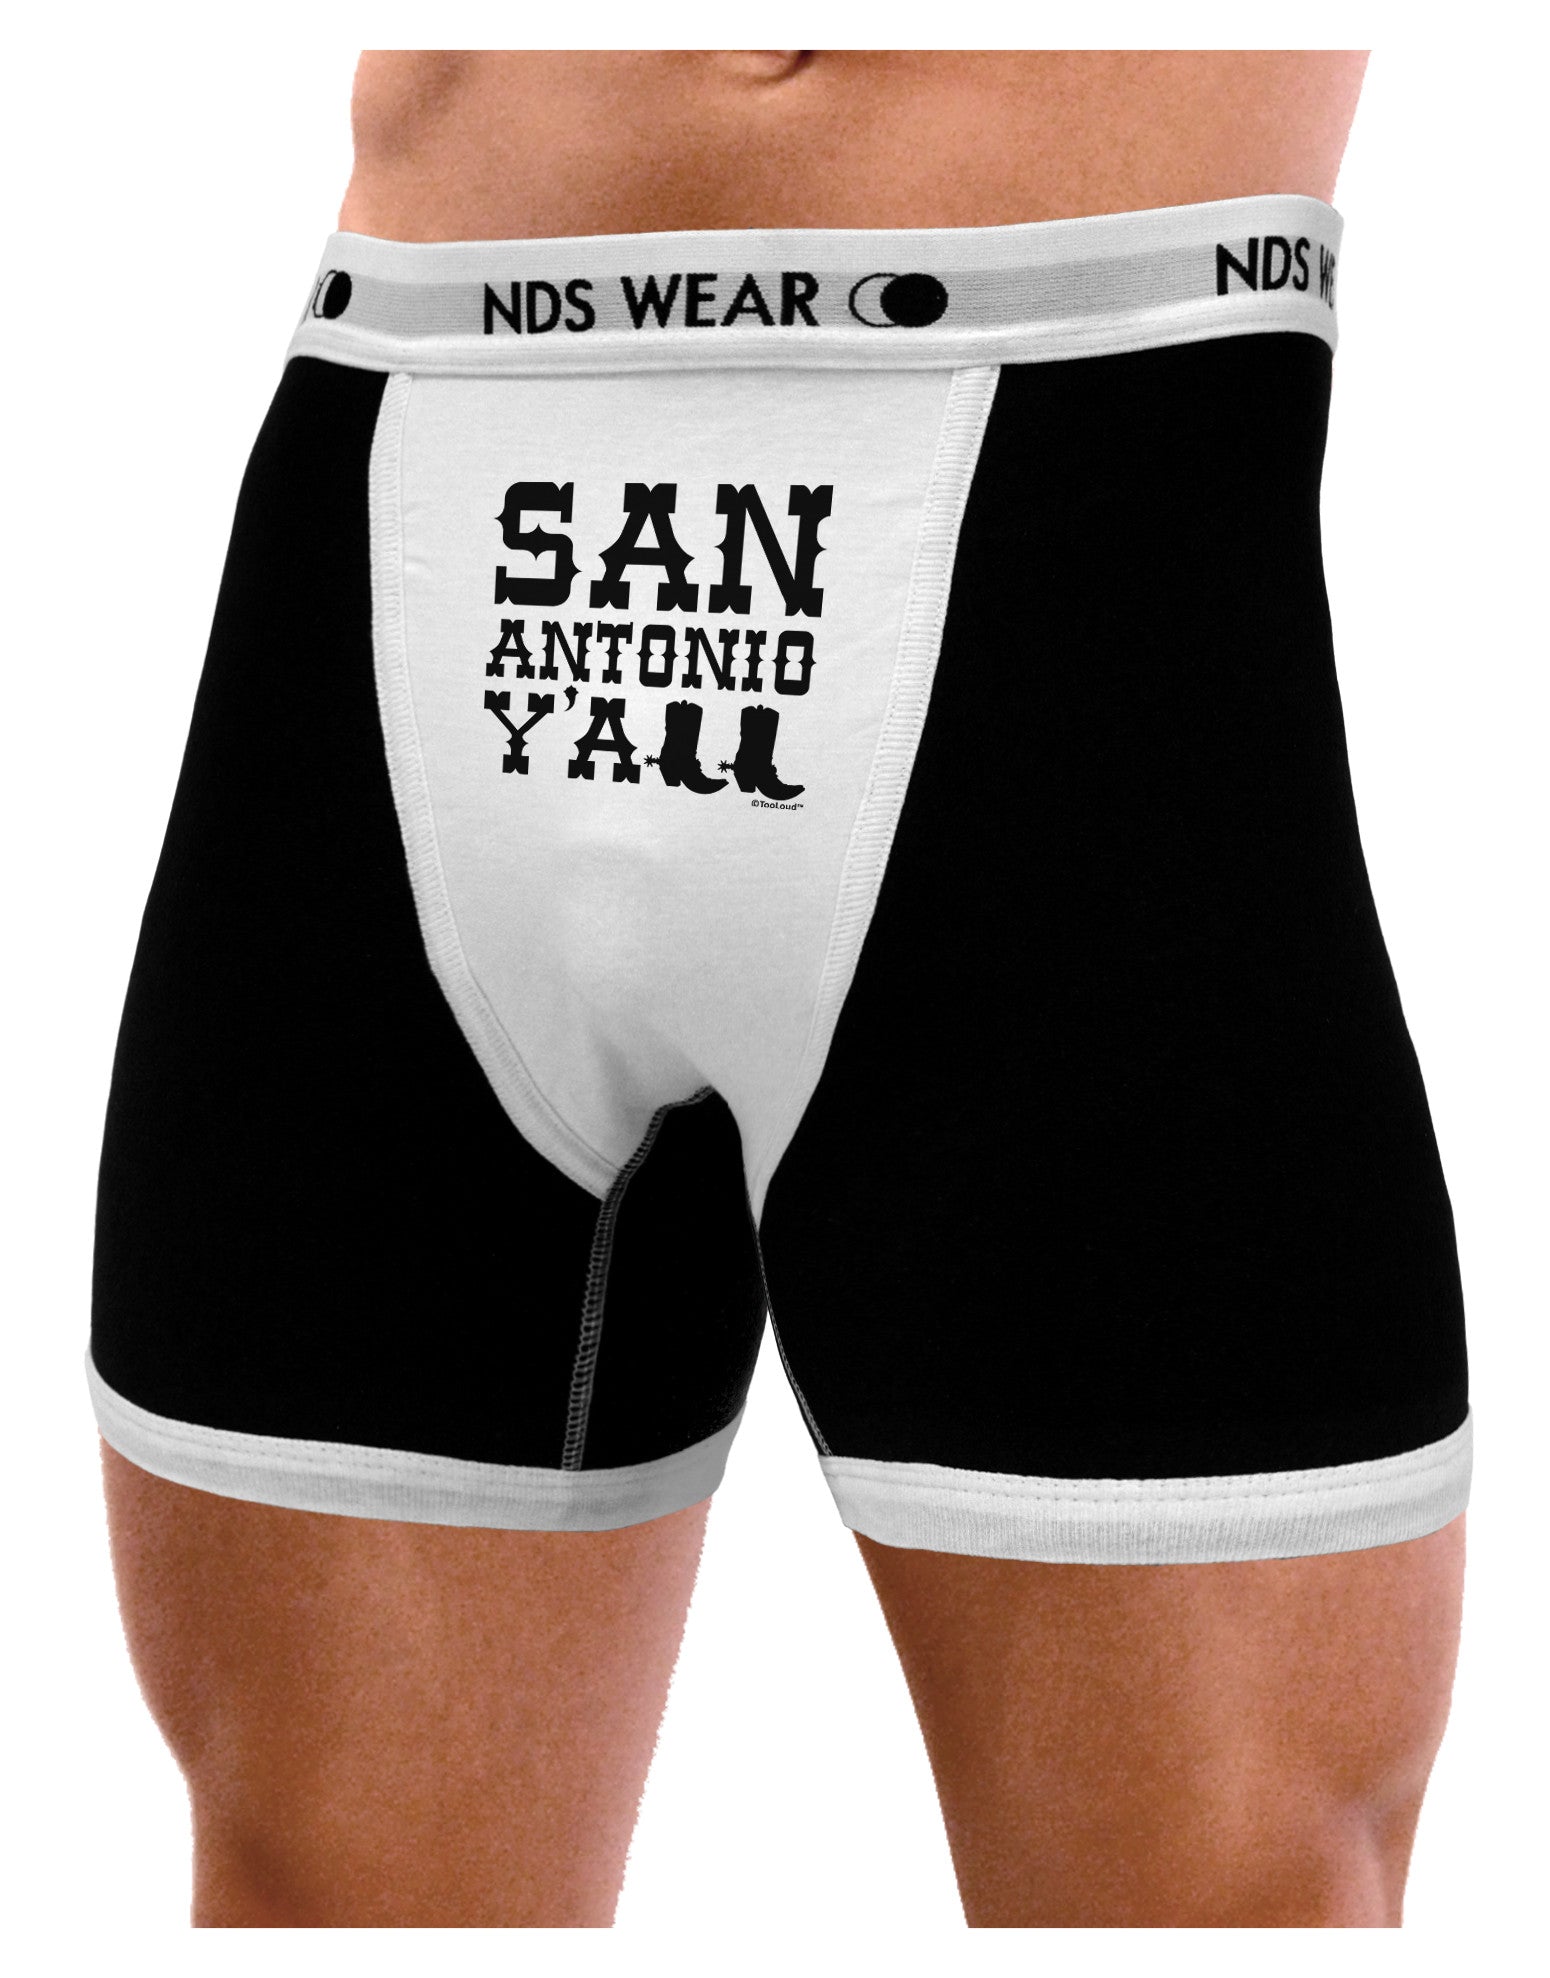 San Antonio Y'all - Boots - Texas Pride Mens NDS Wear Boxer Brief